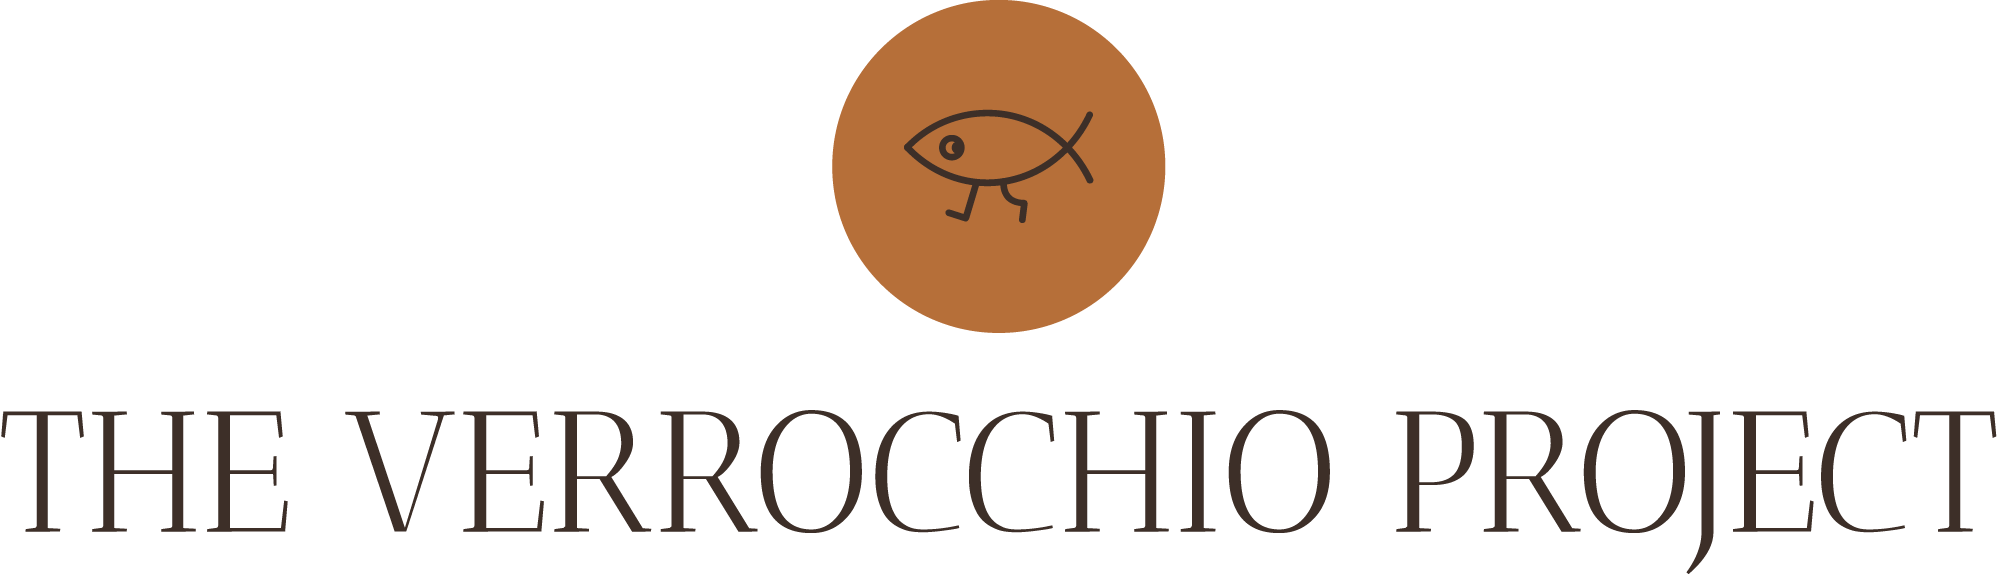 the verrocchio project logo